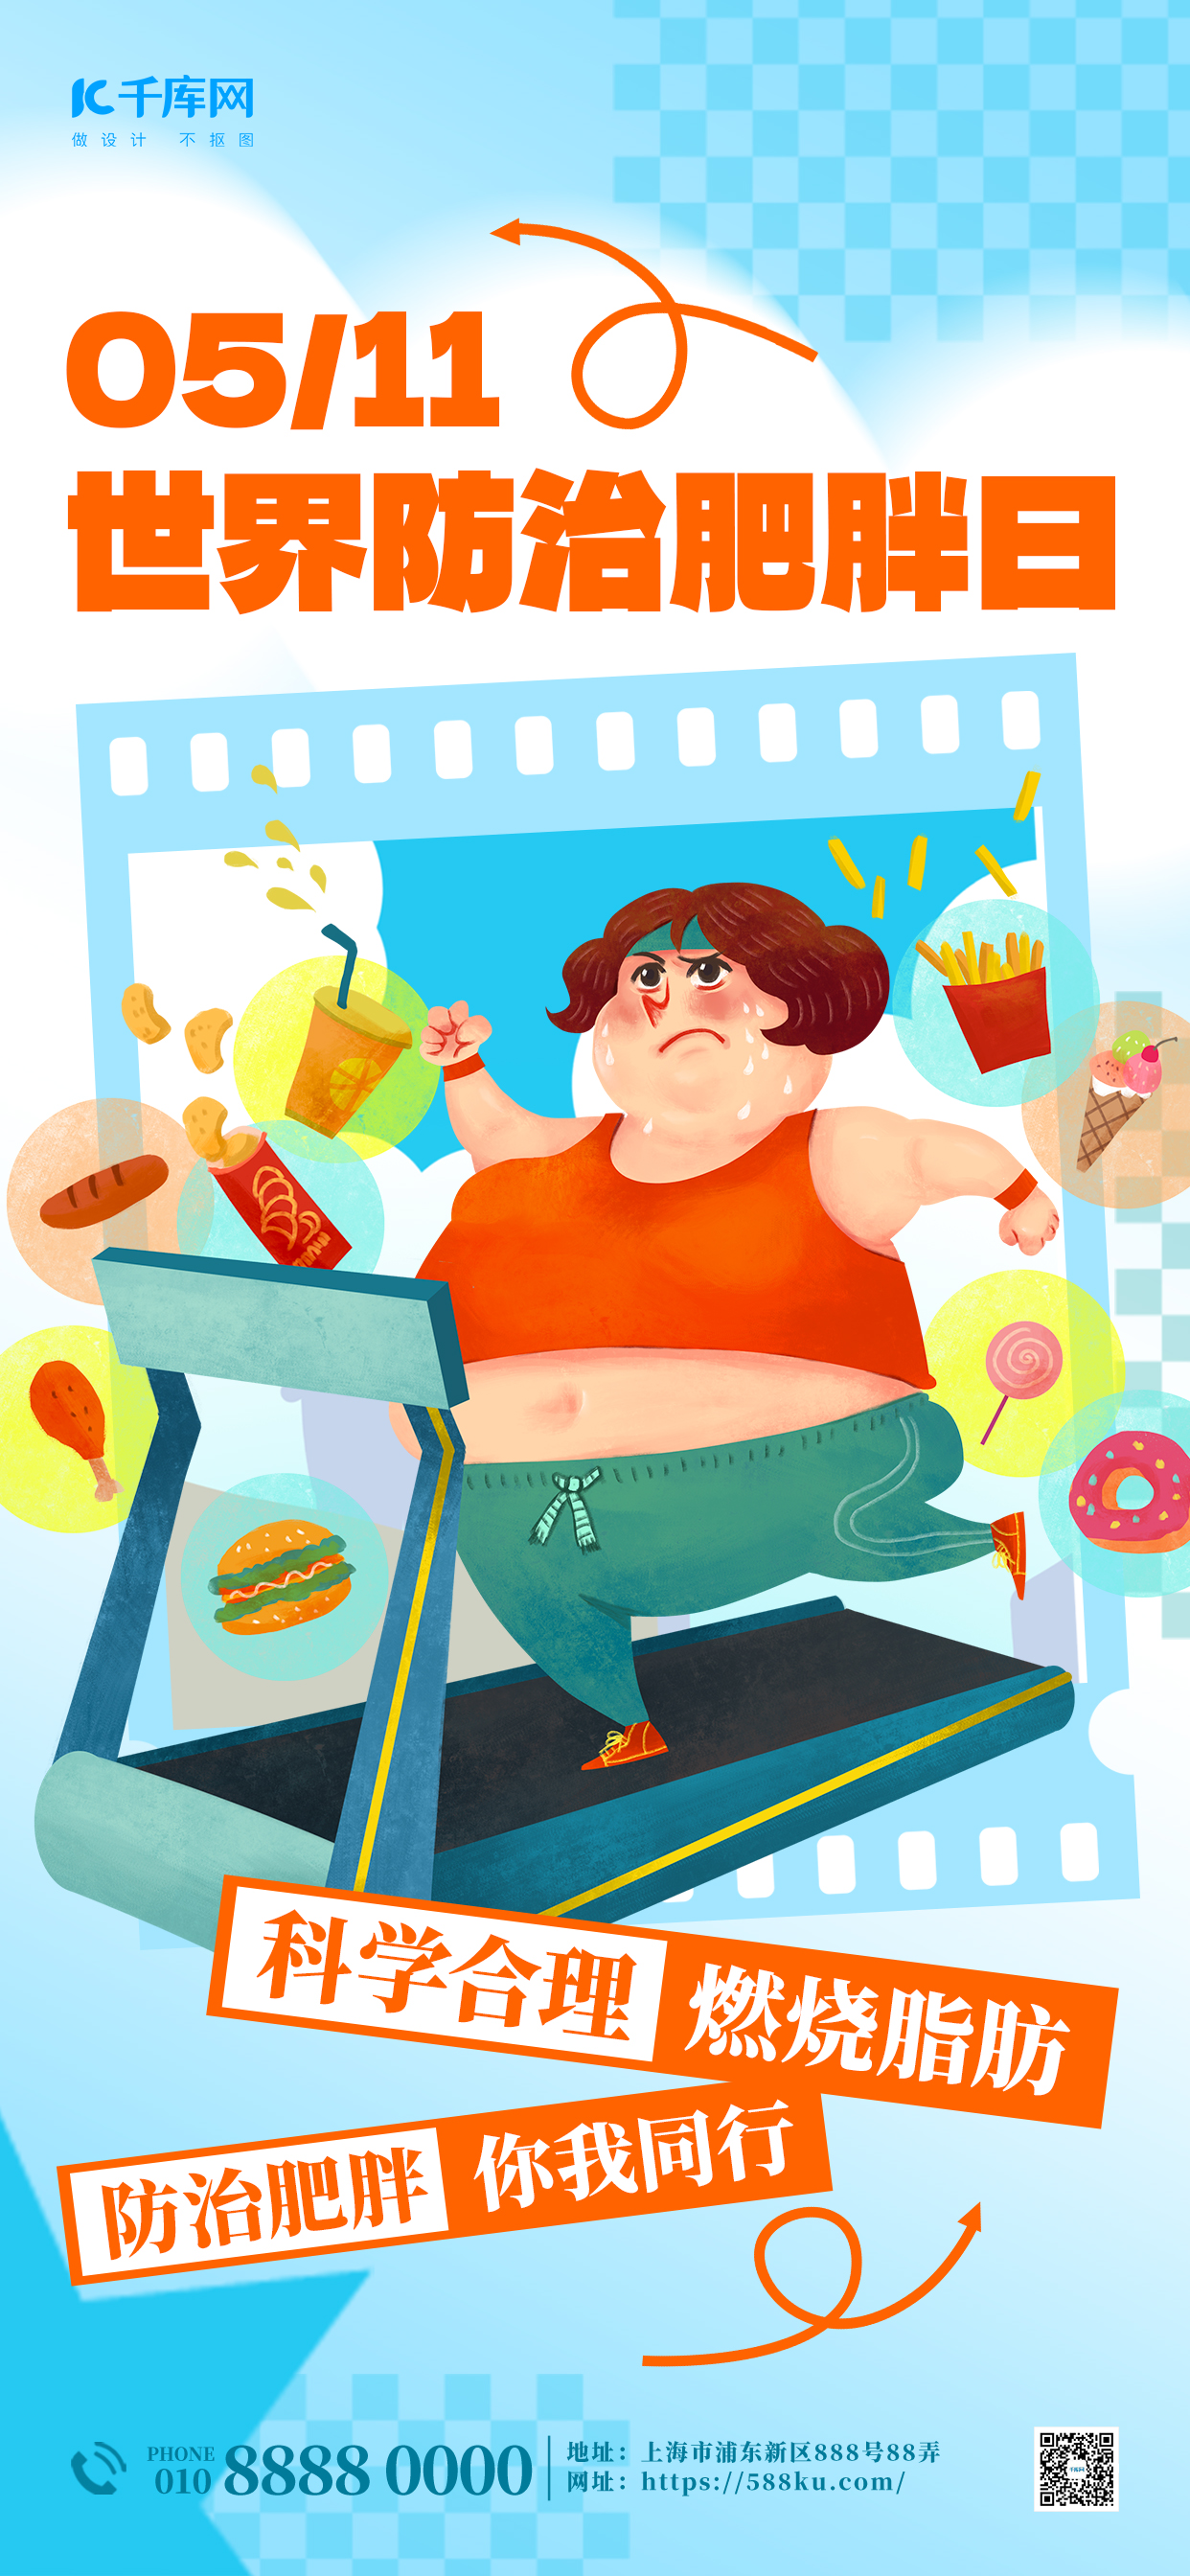 世界防治肥胖日医疗健康蓝色简约插画宣传海报图片